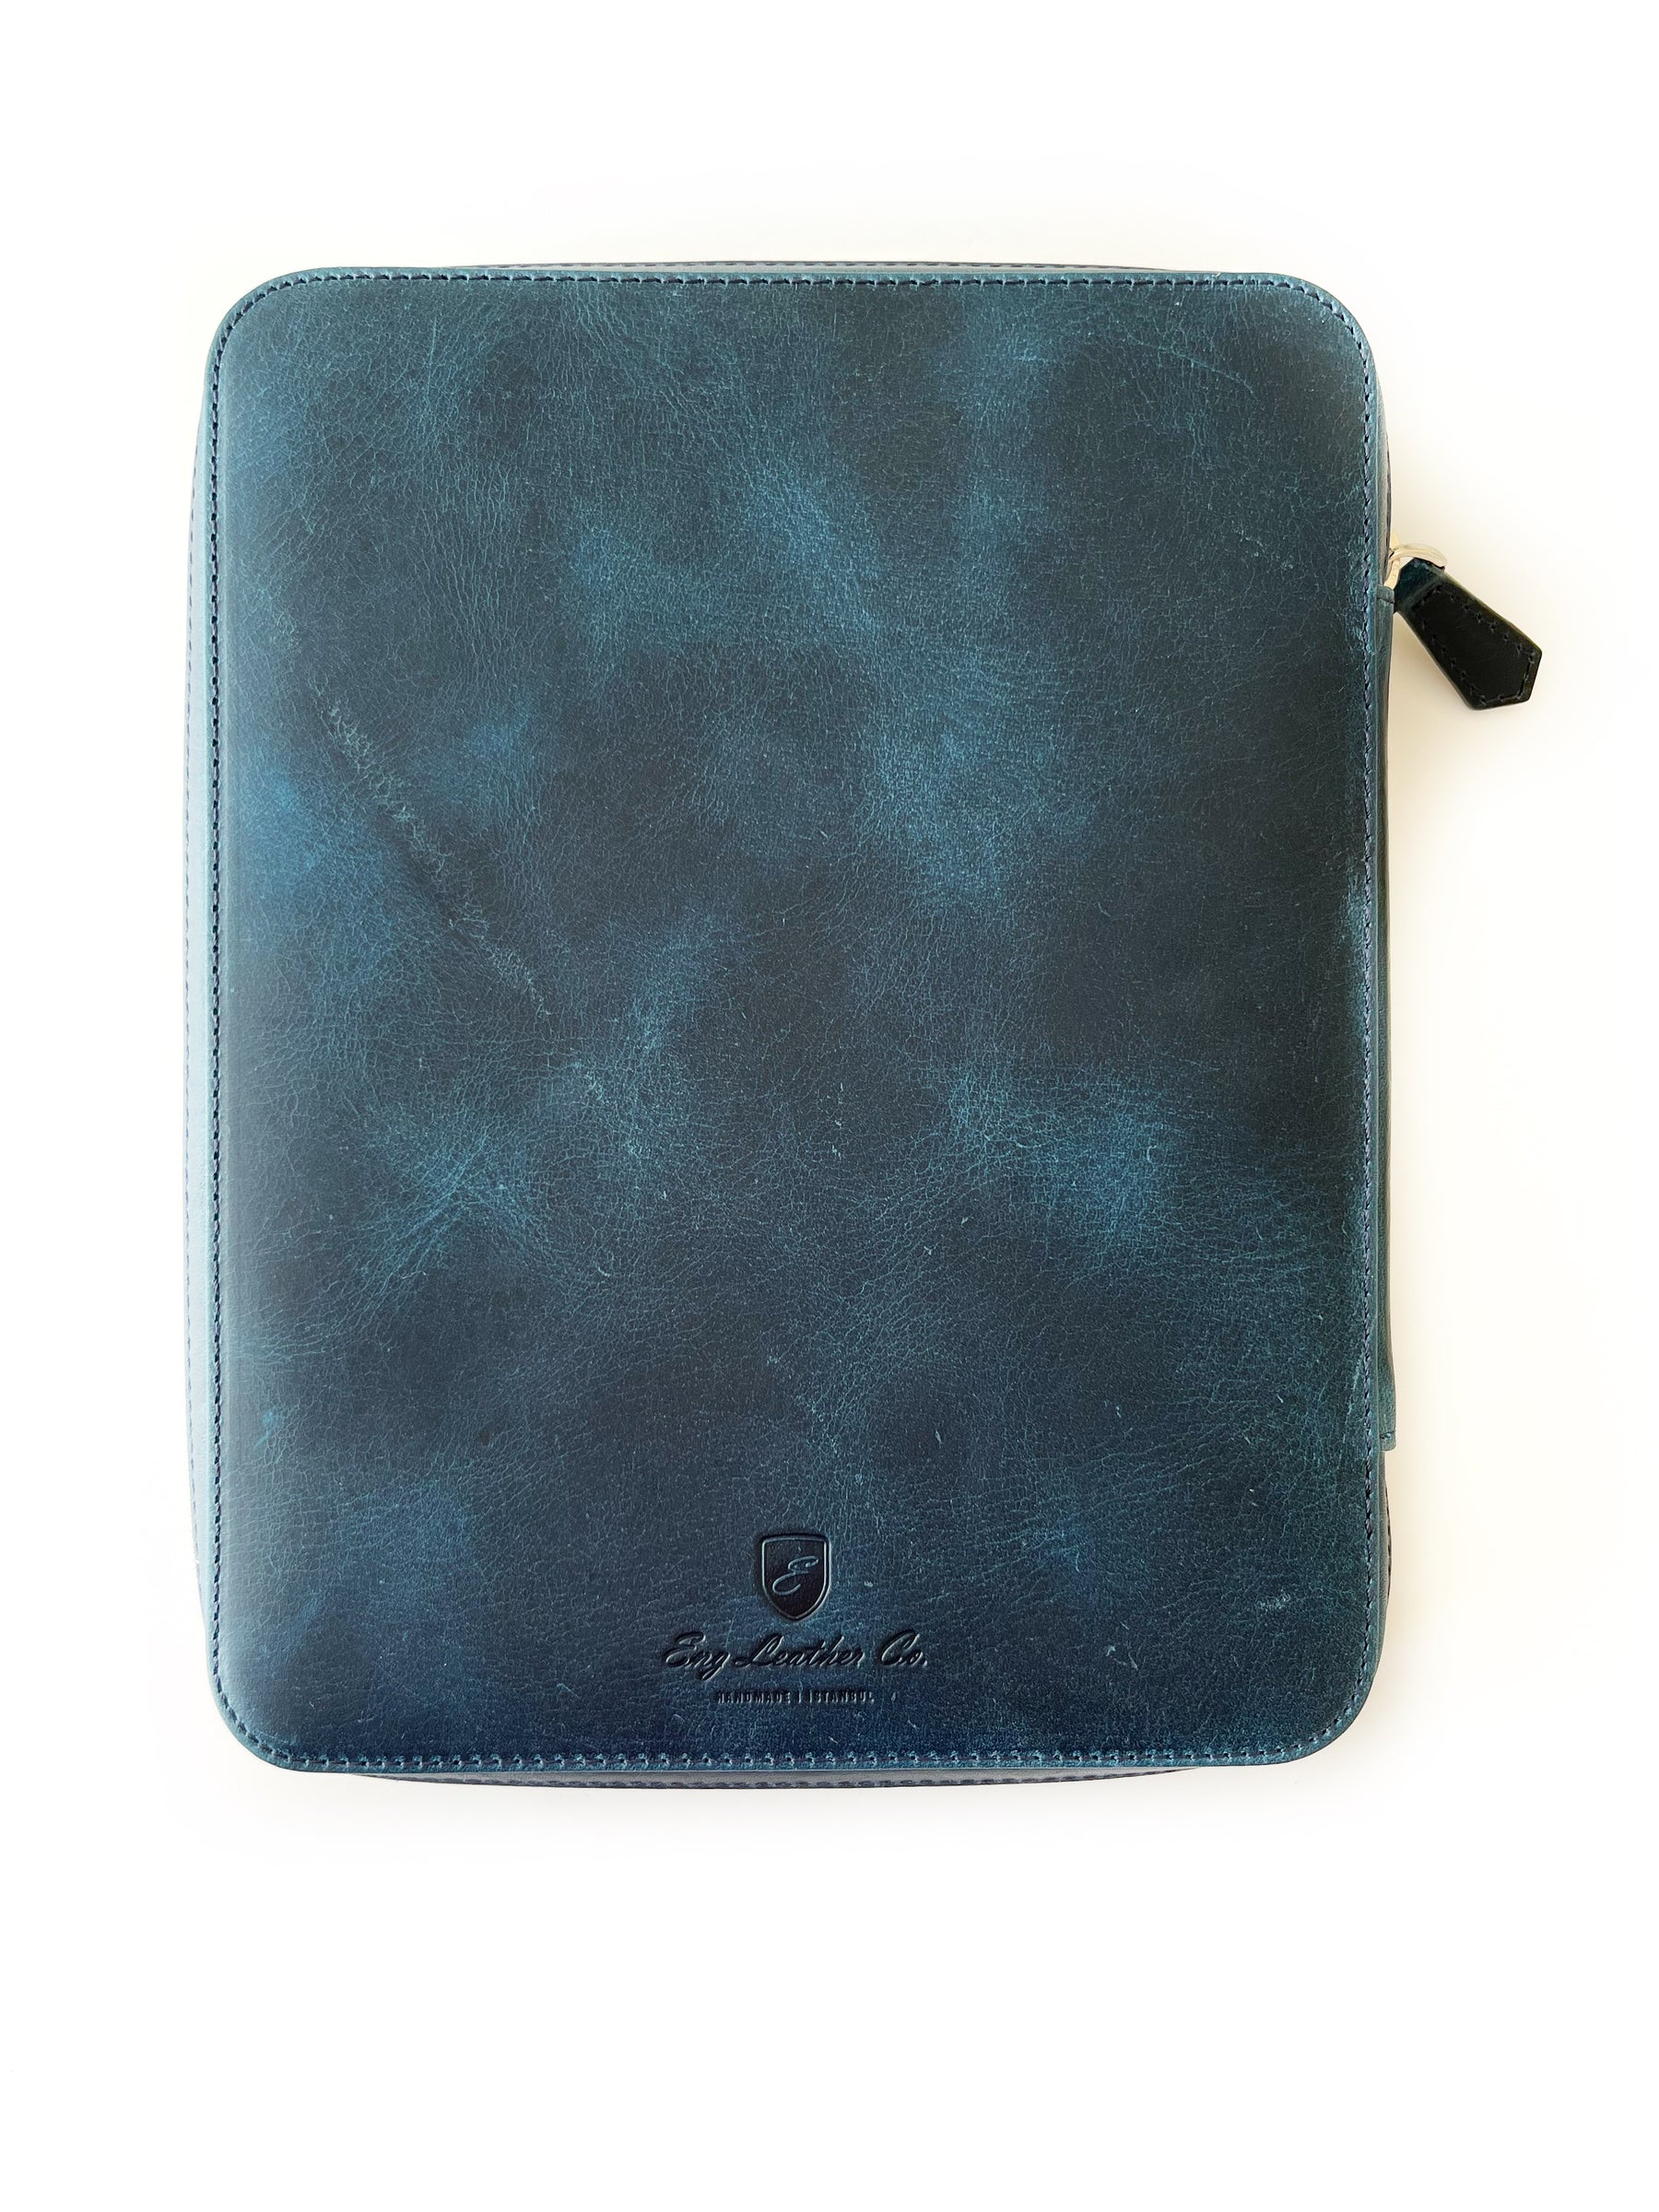 Ocean Blue 18 Slot Leather Pen Case